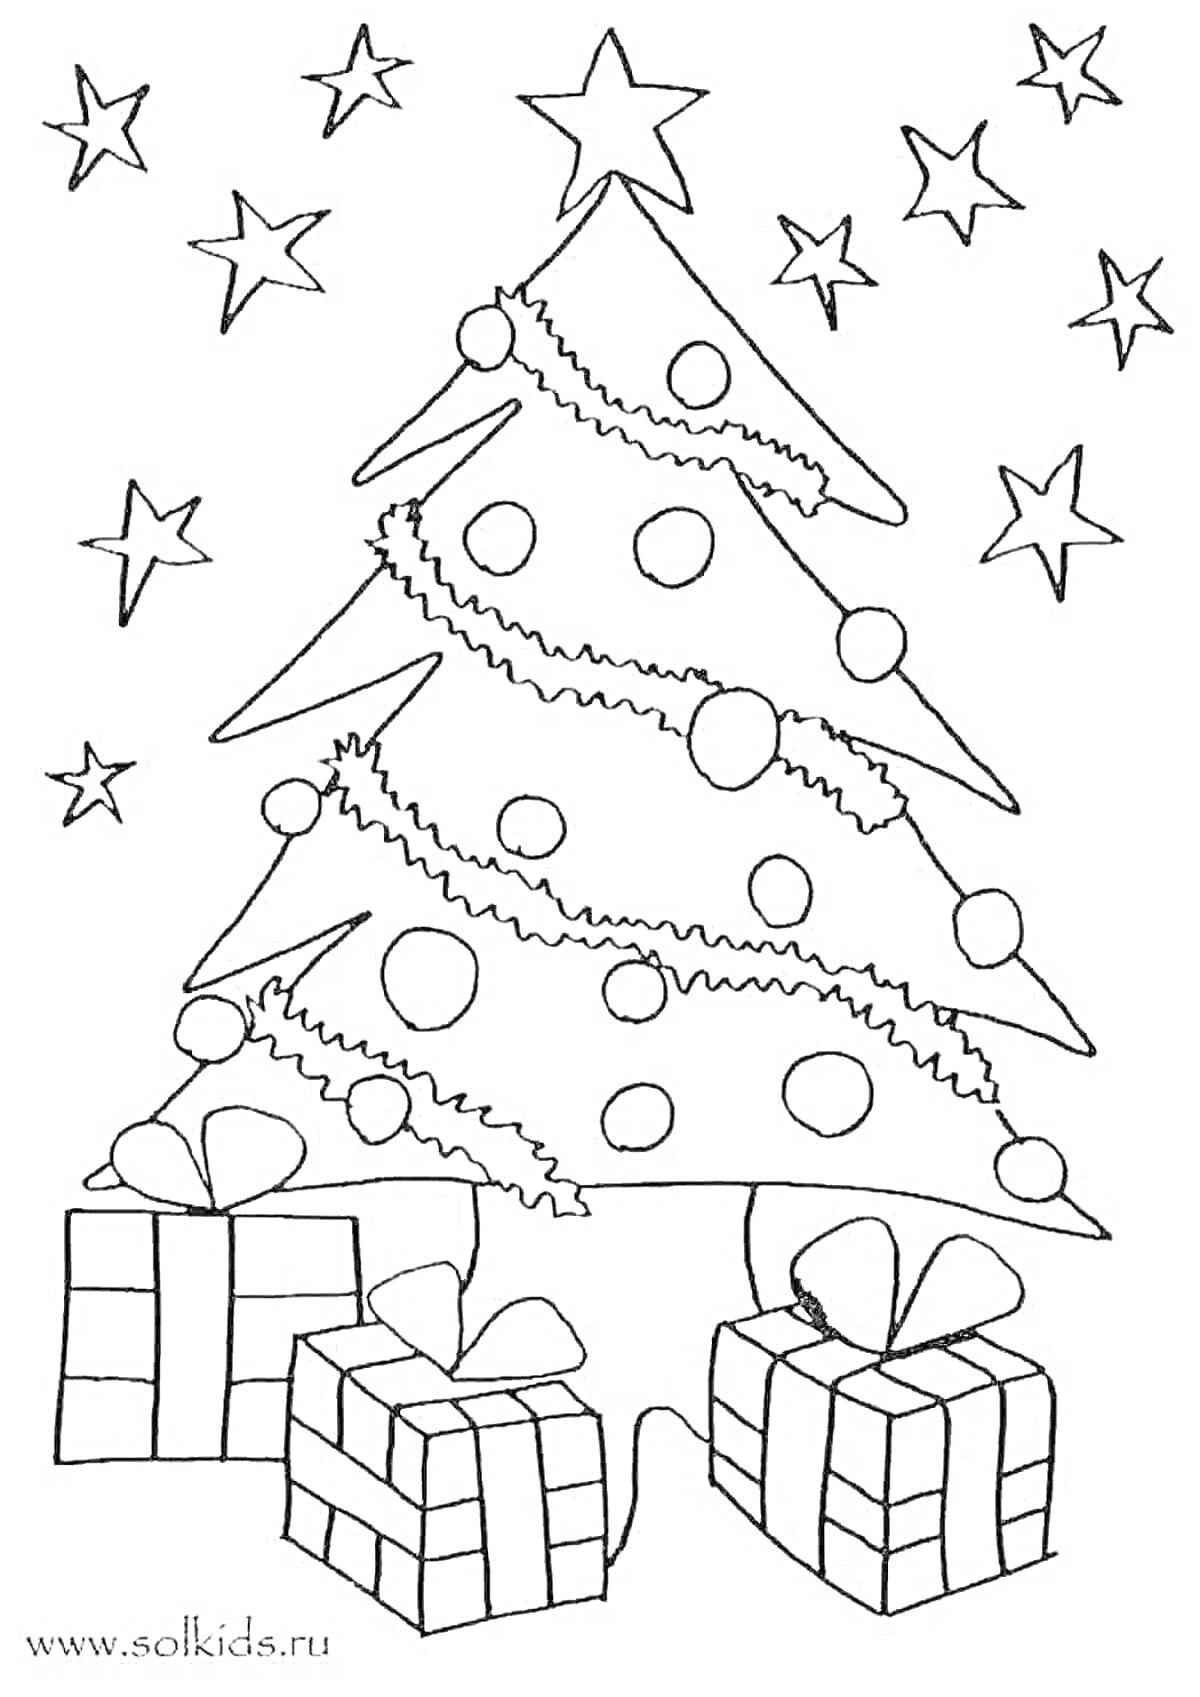 Раскраска елочка с гирляндой и шарами, окруженная звездами, с подарками под елкой